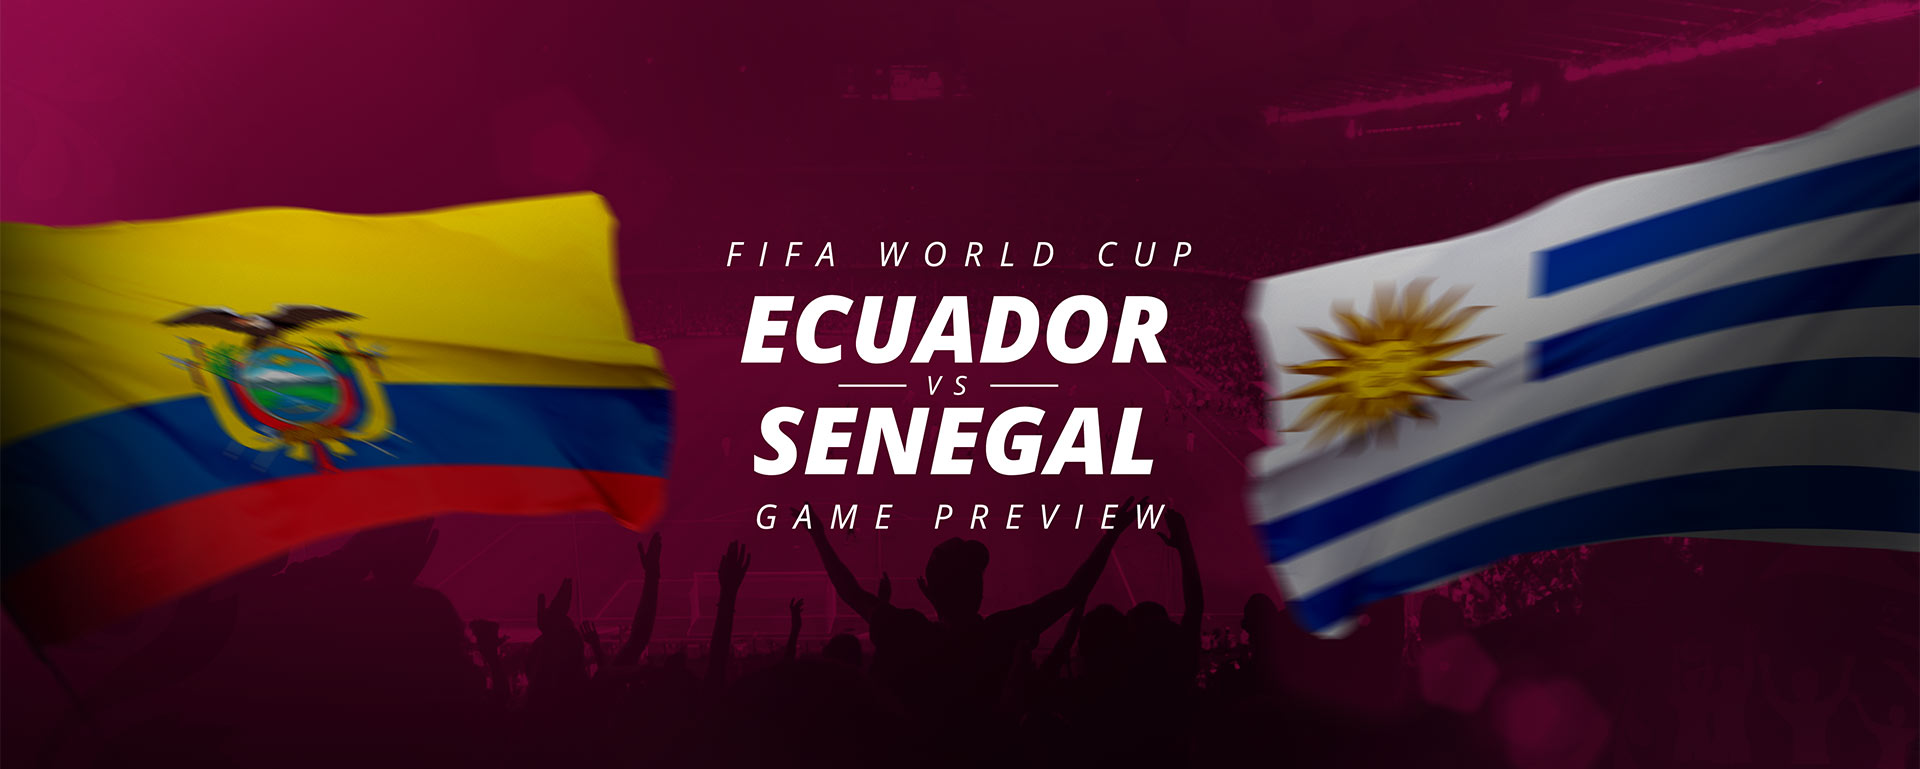 FIFA WORLD CUP: ECUADOR V SENEGAL – GAME PREVIEW